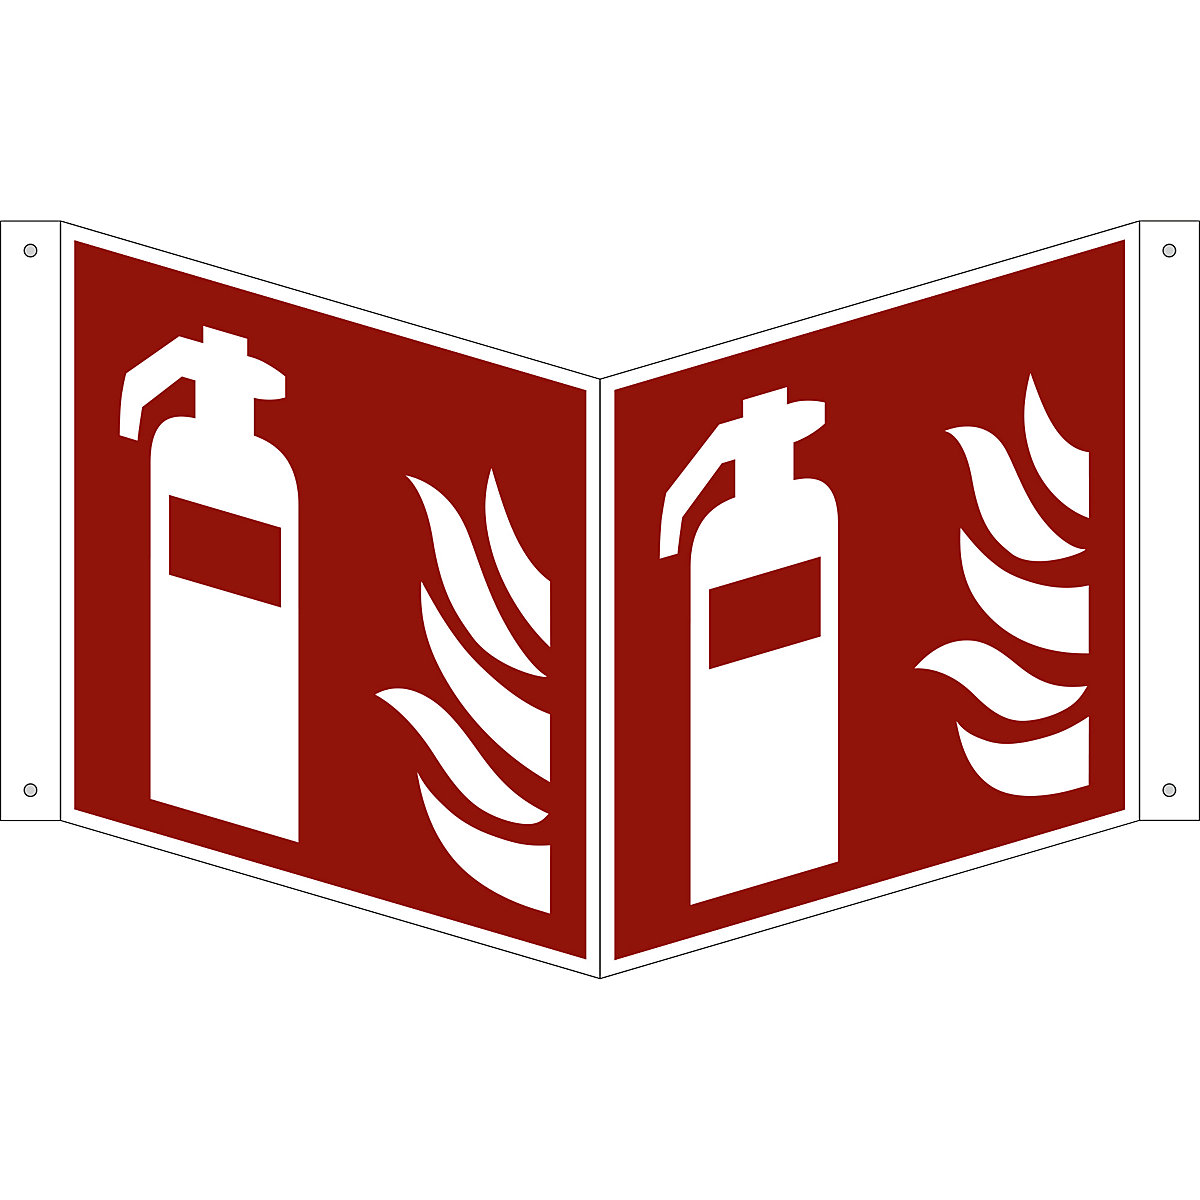 Značka pro ochranu proti požáru, hasicí přístroj, bal.j. 10 ks, hliník, vysunutý štítek, 200 x 200 mm